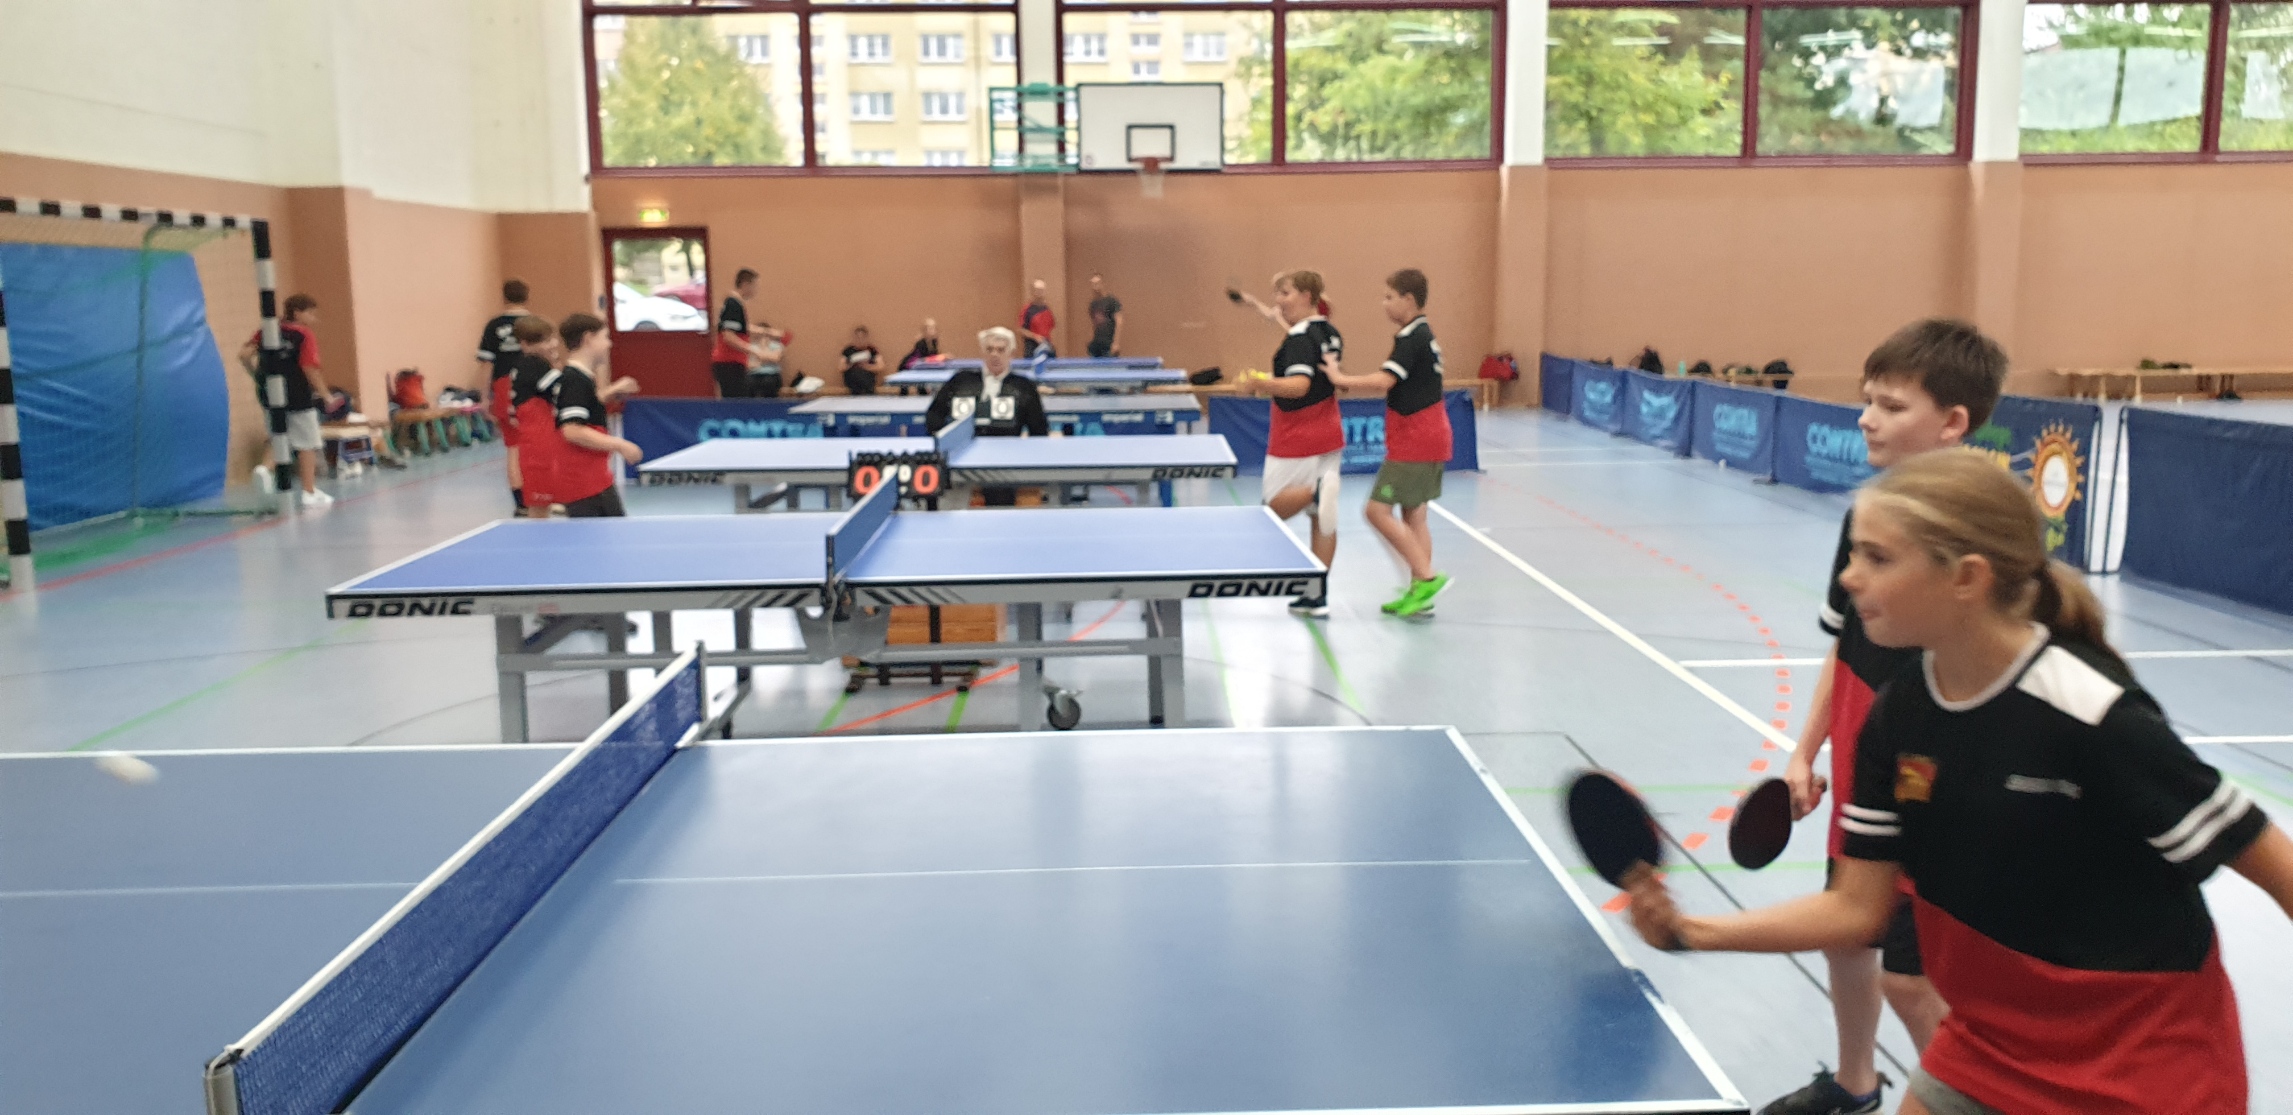 Lok Kamenz startet mit 2 Schülermannschaften in die neue Tischtennis Saison